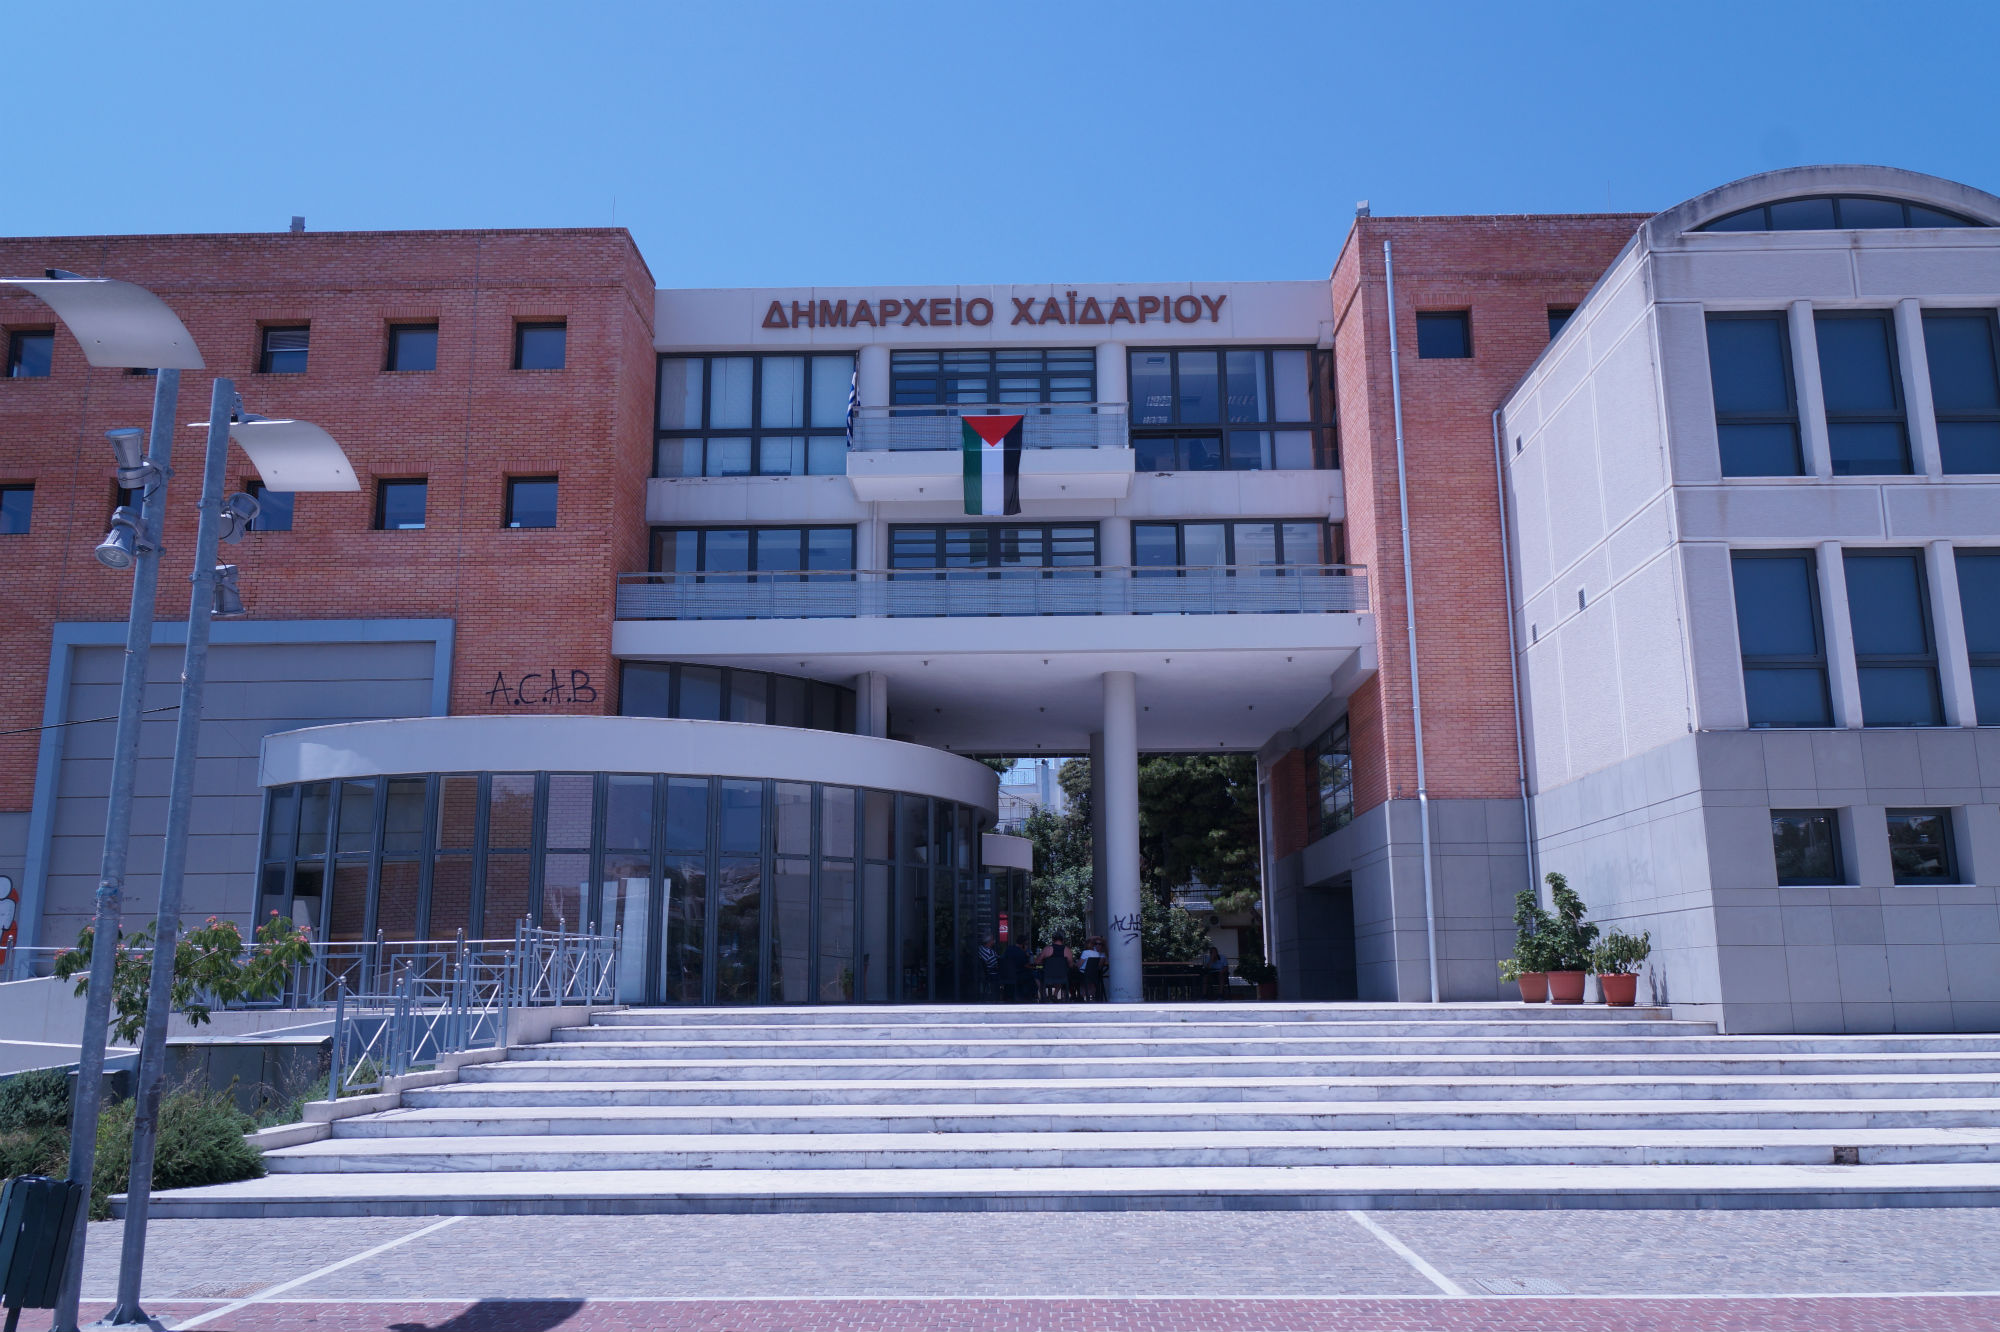 Ψηφιακό κέντρο υπηρεσιών ηλεκτρονικής διακυβέρνησης αποκτά ο Δήμος Χαϊδαρίου